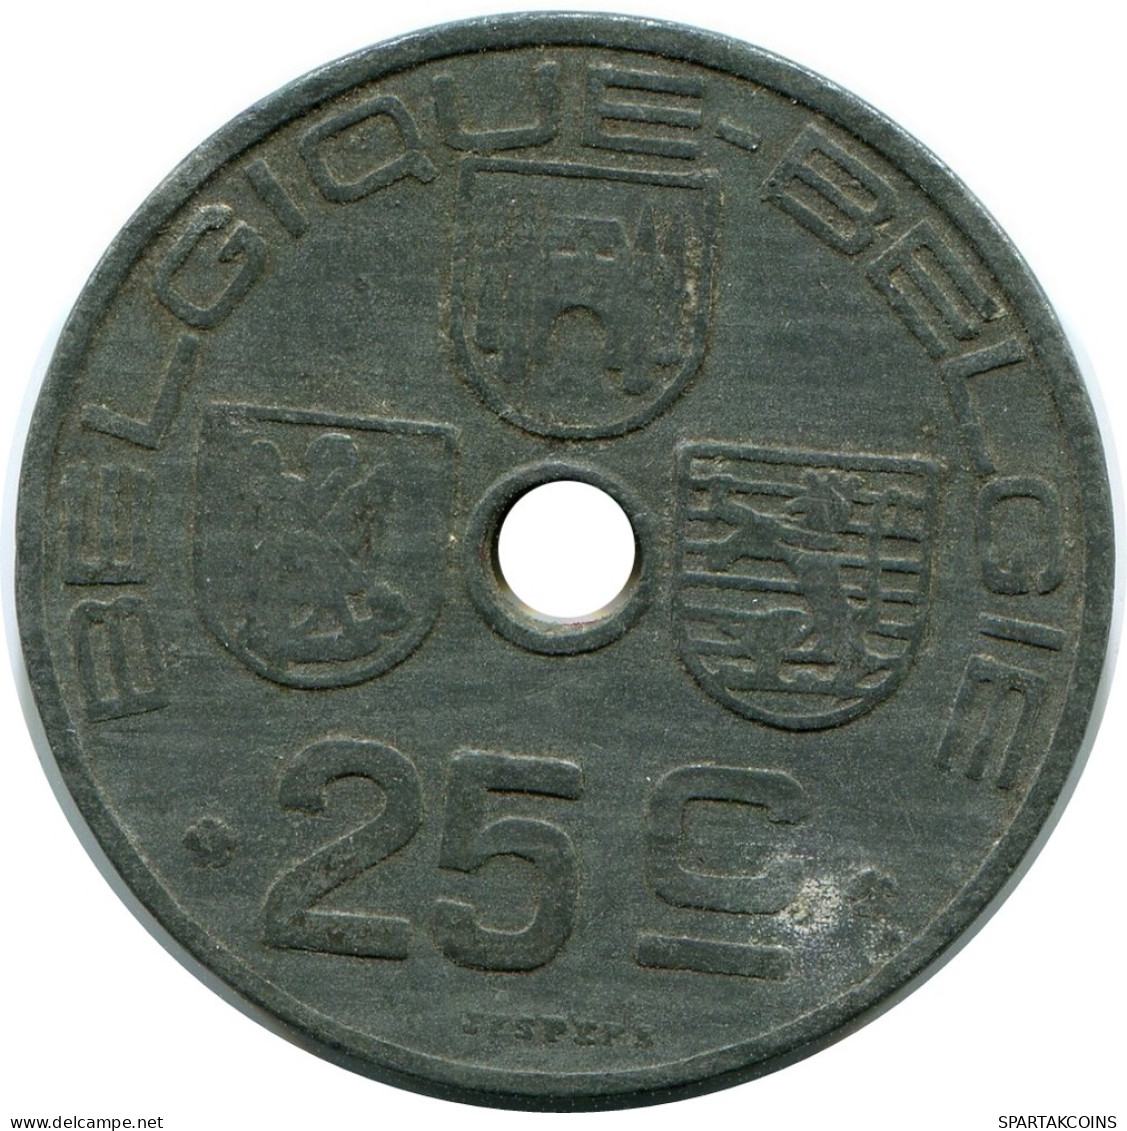 25 CENTIMES 1942 BÉLGICA BELGIUM Moneda BELGIE-BELGIQUE #AX369.E - 25 Cents